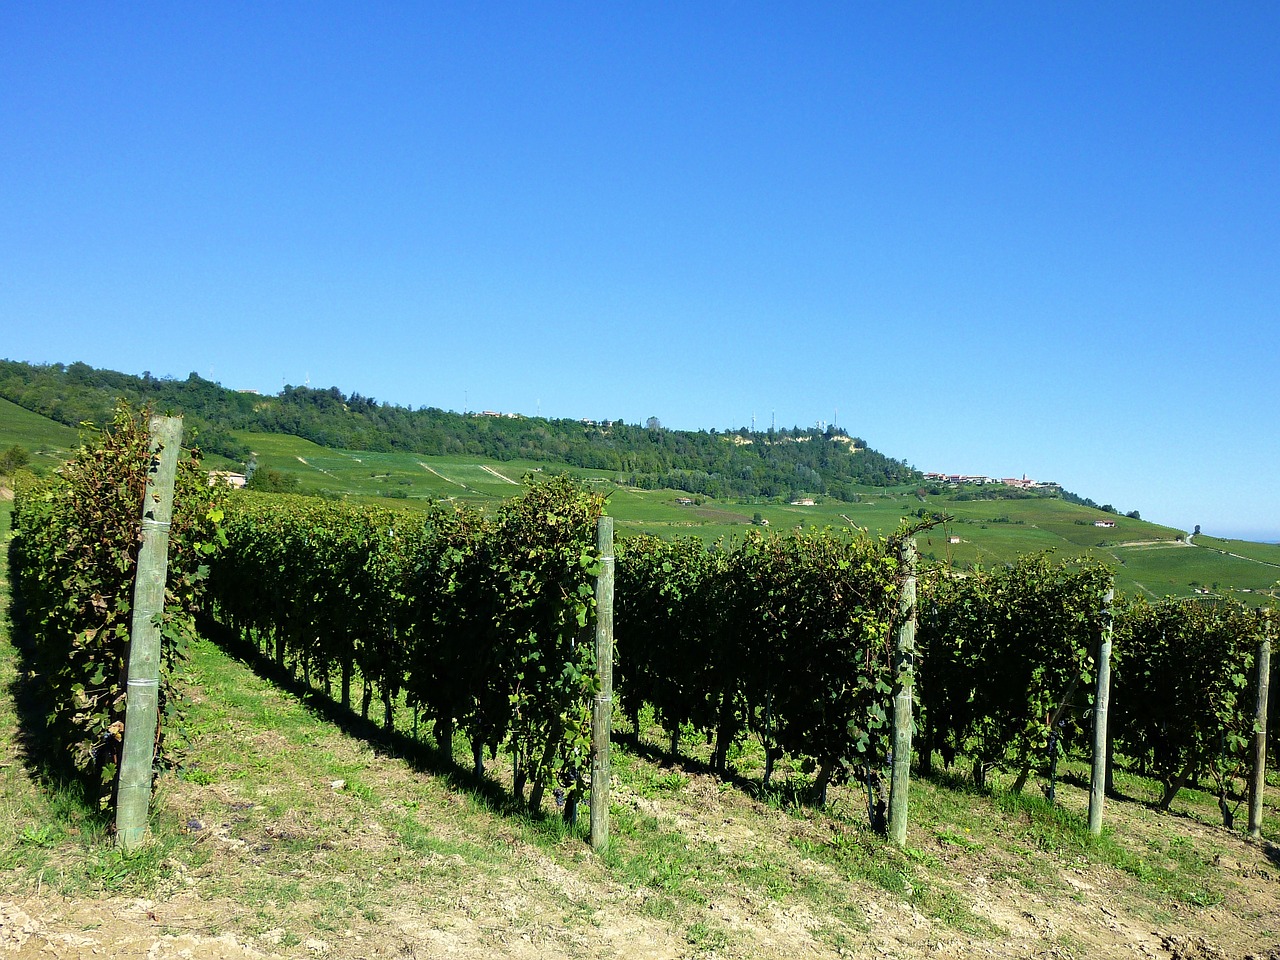 イタリア中部 トスカーナ州のブドウ畑